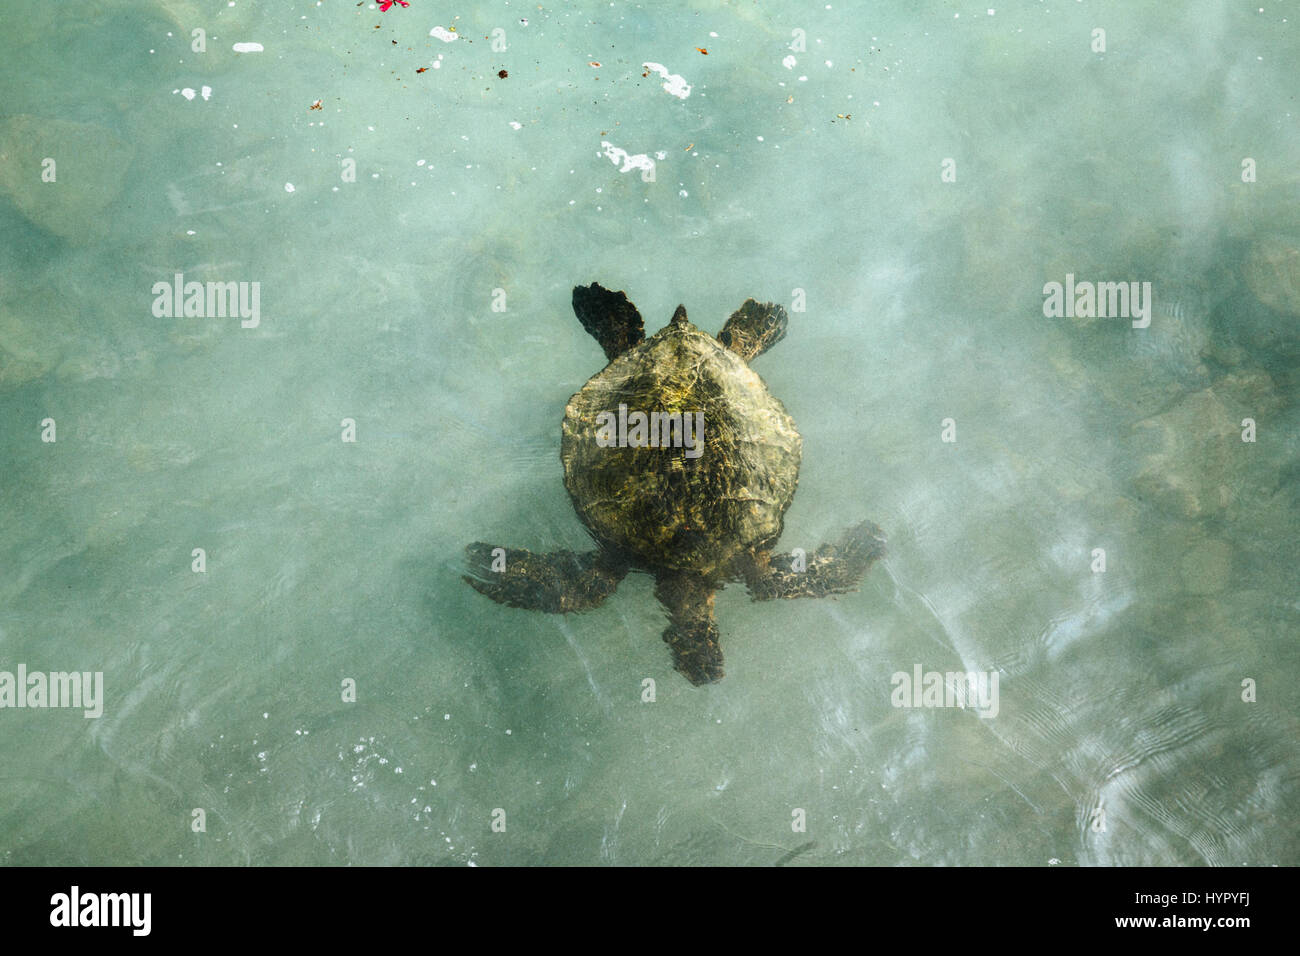 One Hawaiian Green Sea Turtle in Teal Water Stock Photo